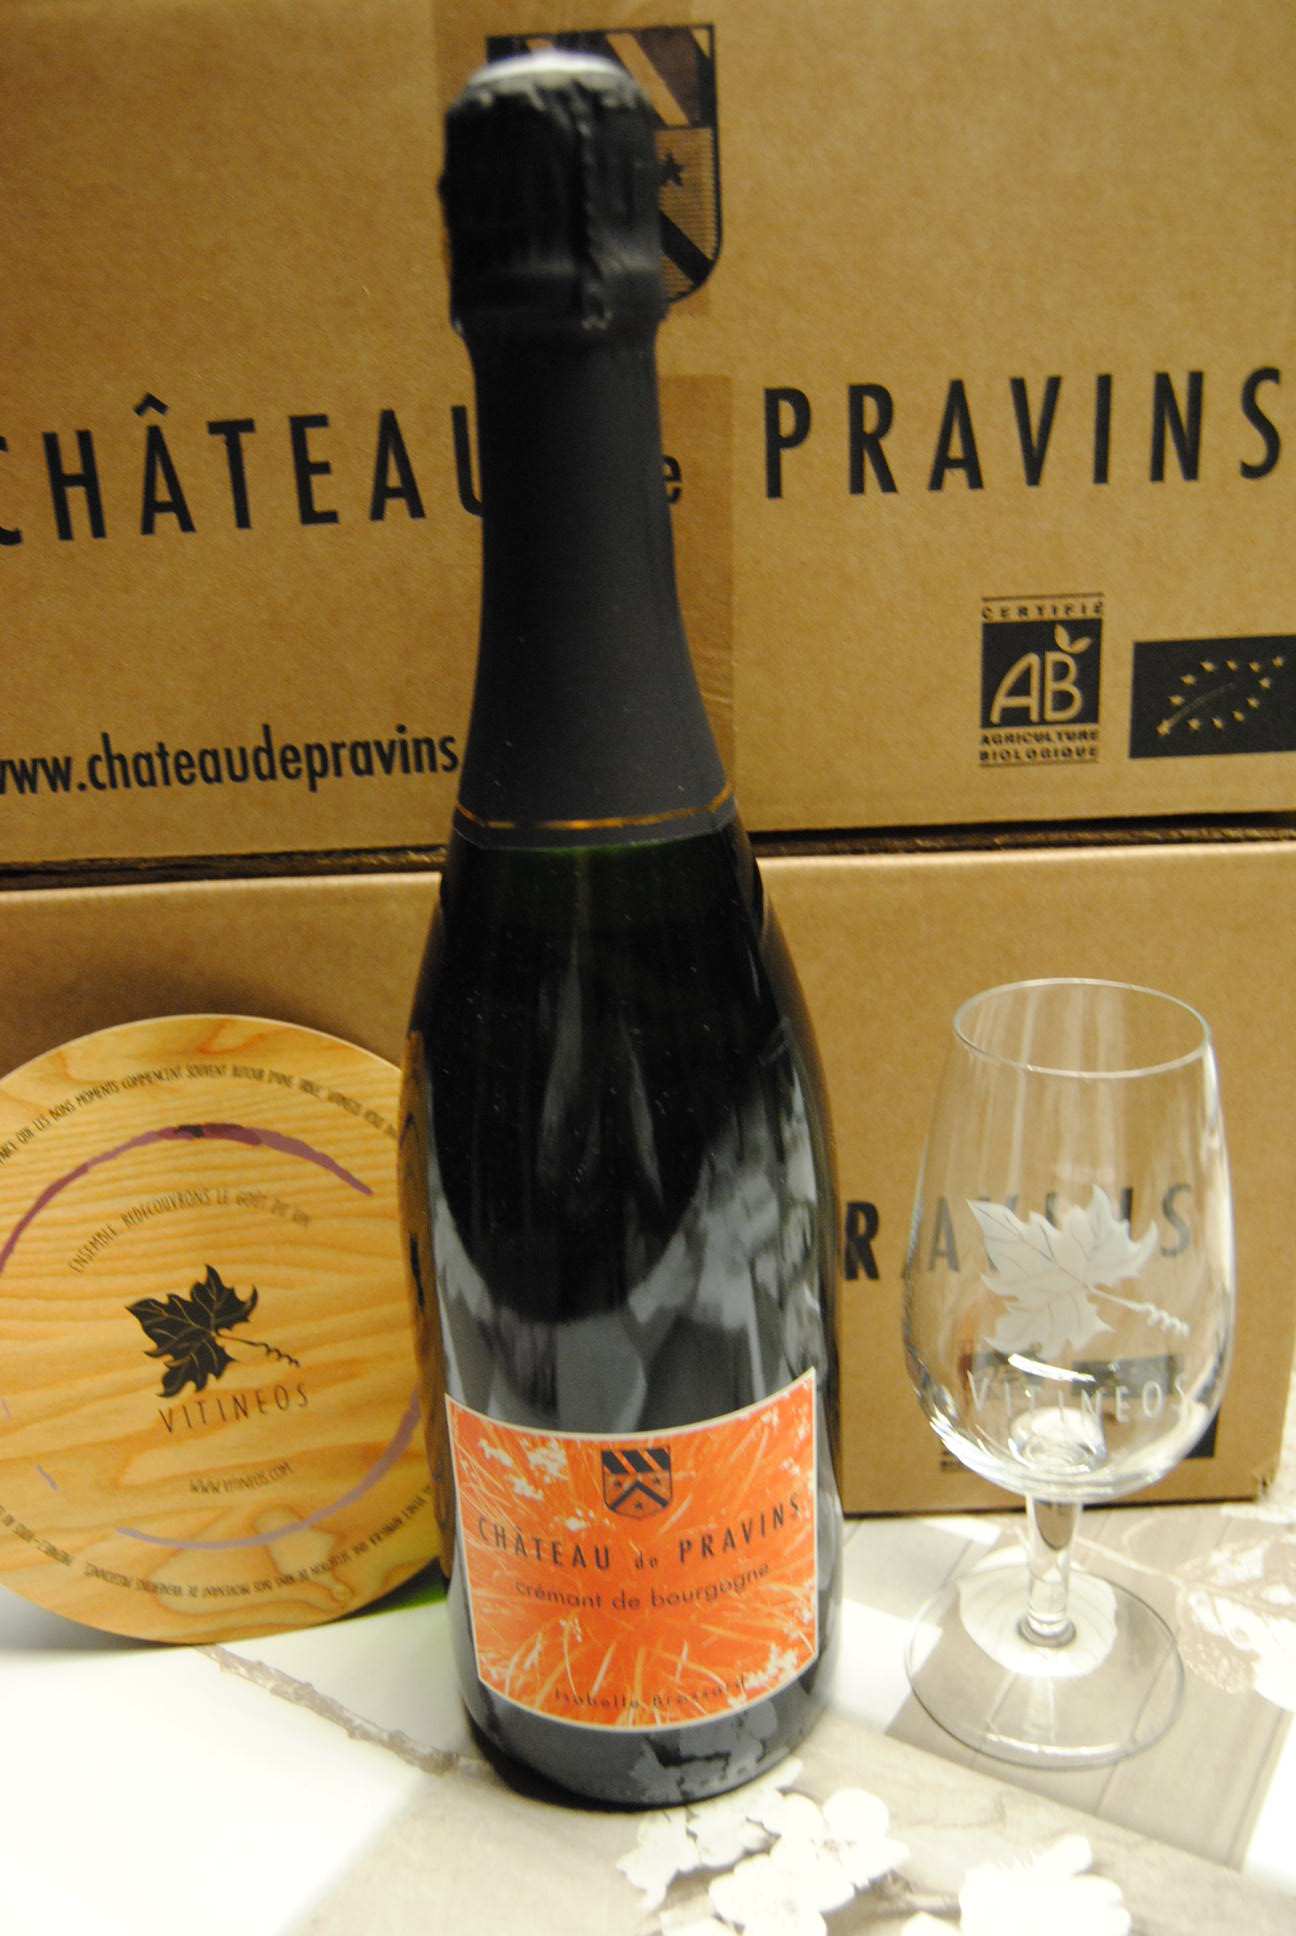 (1001-007) Crémant de Bourgogne 2016 - Blanc Brut Pétillant - Chateau de Pravins (Isabelle Brossard)